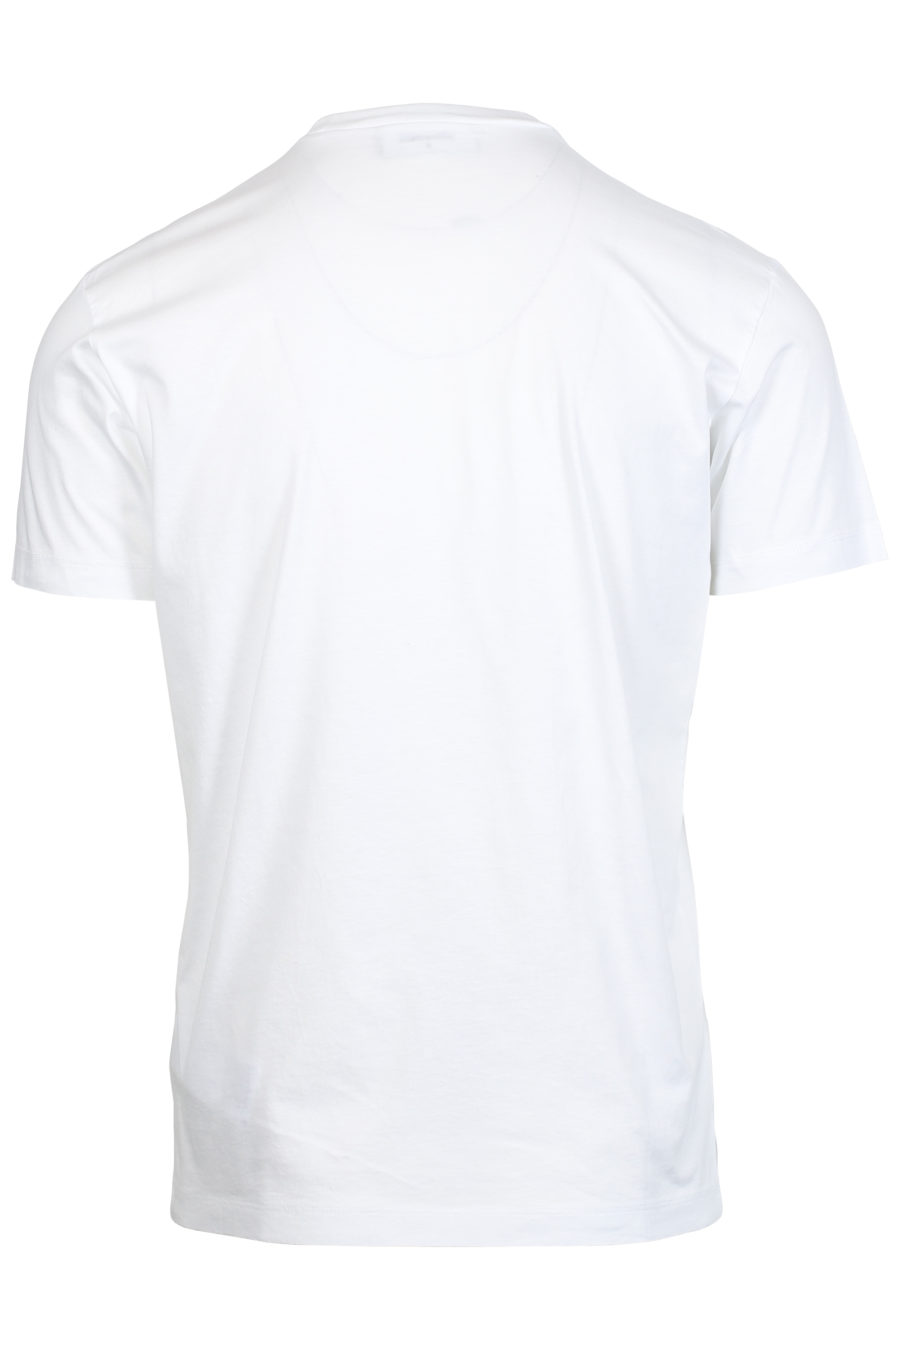 Camiseta blanca con estampado hoja - IMG 2405